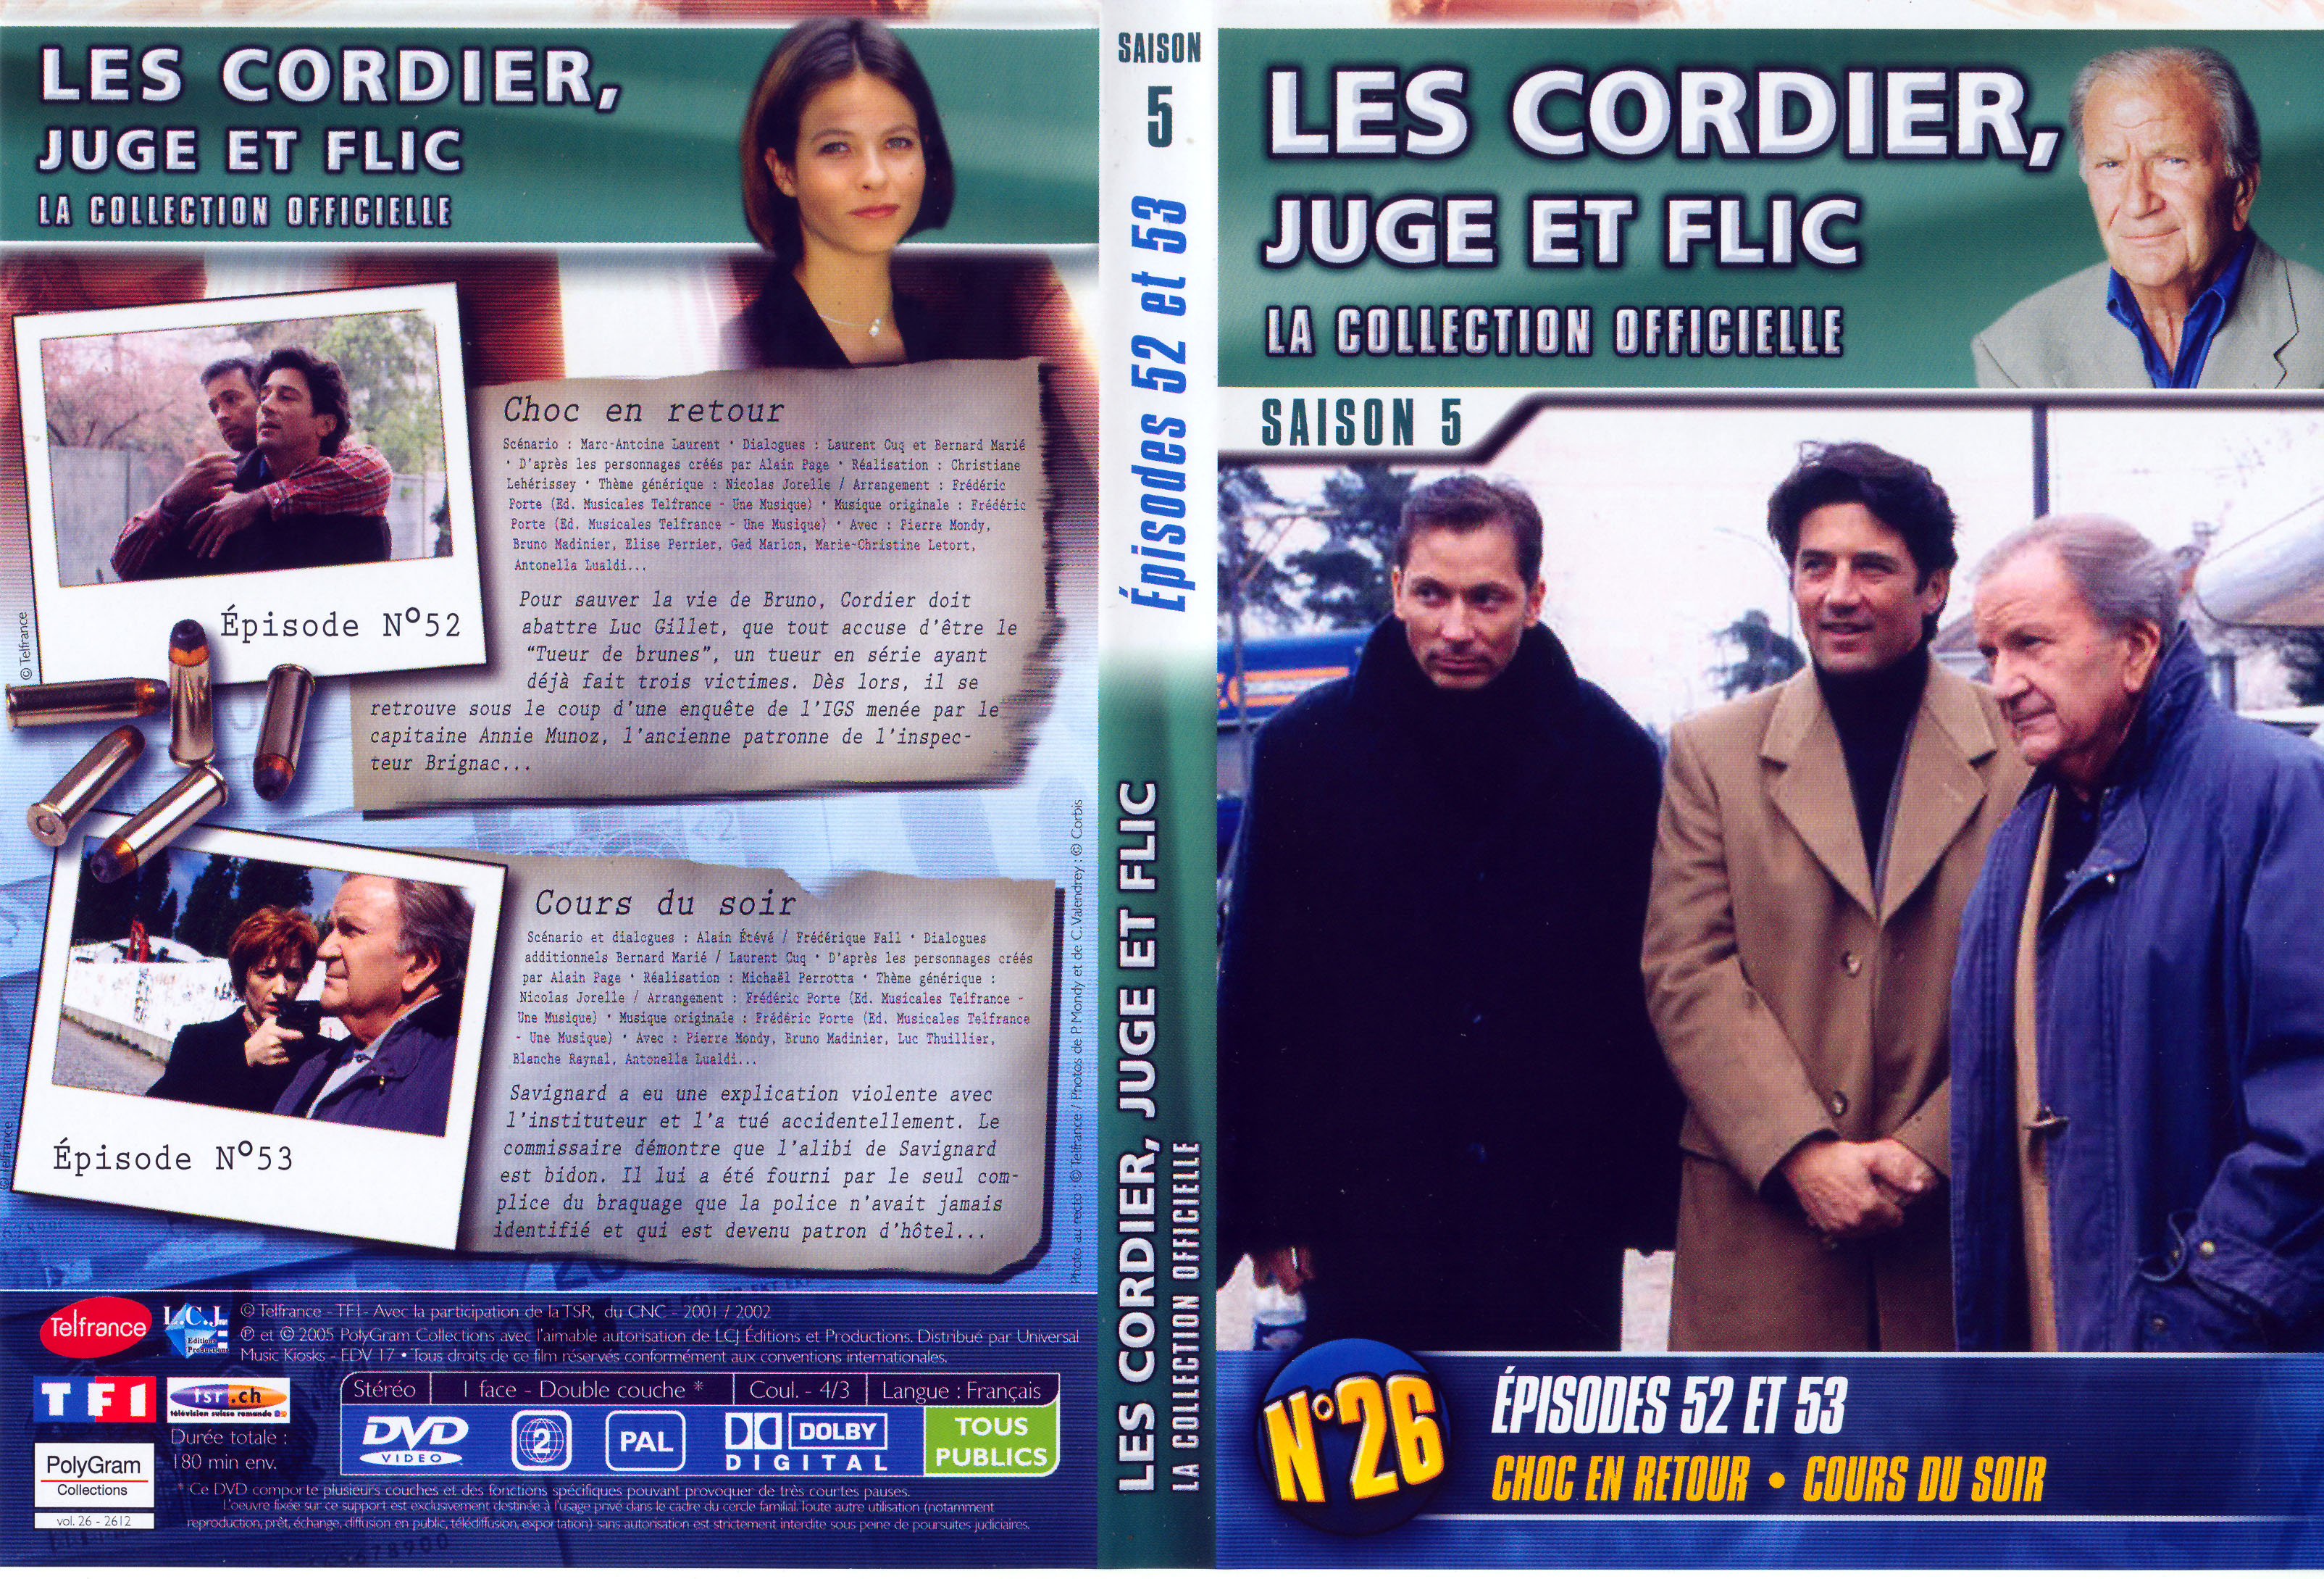 Jaquette DVD Les cordier juge et flic Saison 5 vol 26